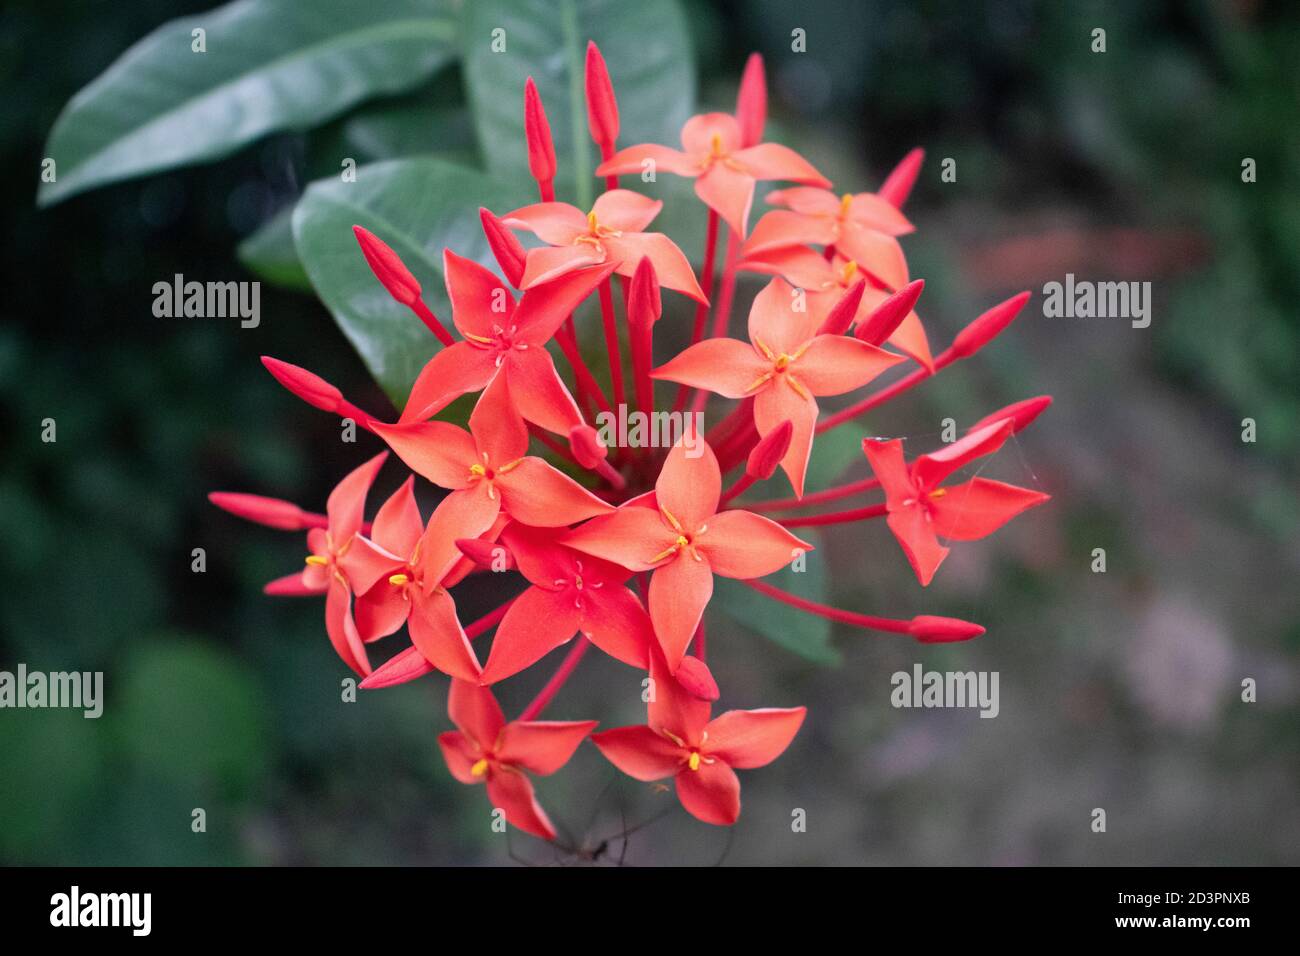 Ixora oder Jungle Geranium Pflanze im Garten oder Rangun Blume Stockfoto